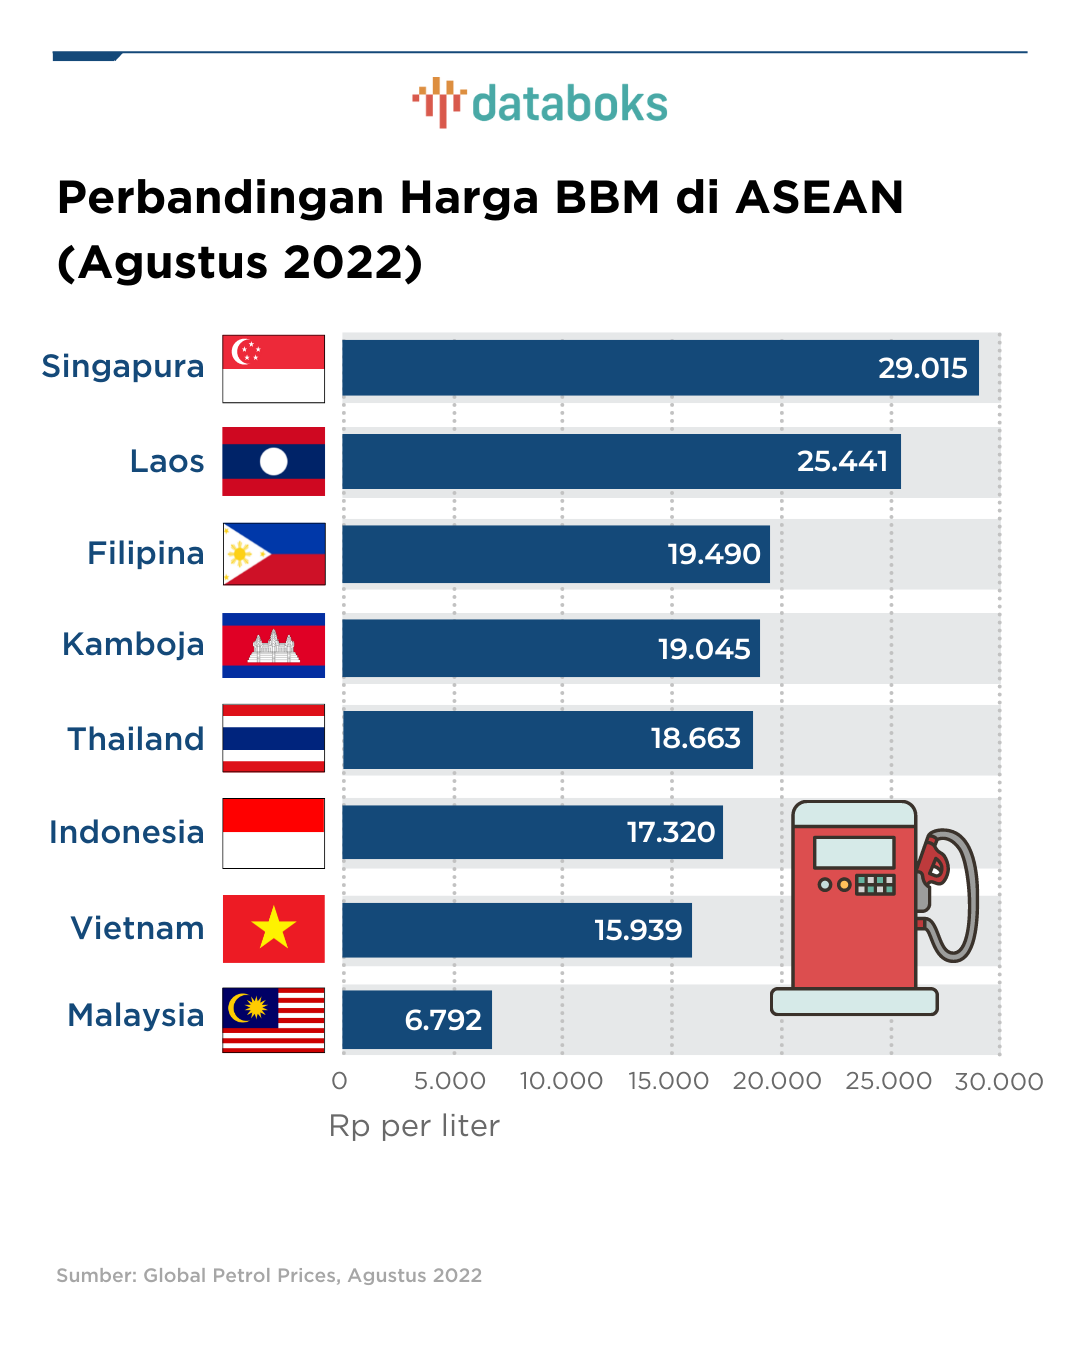 Perbandingan Harga BBM di ASEAN